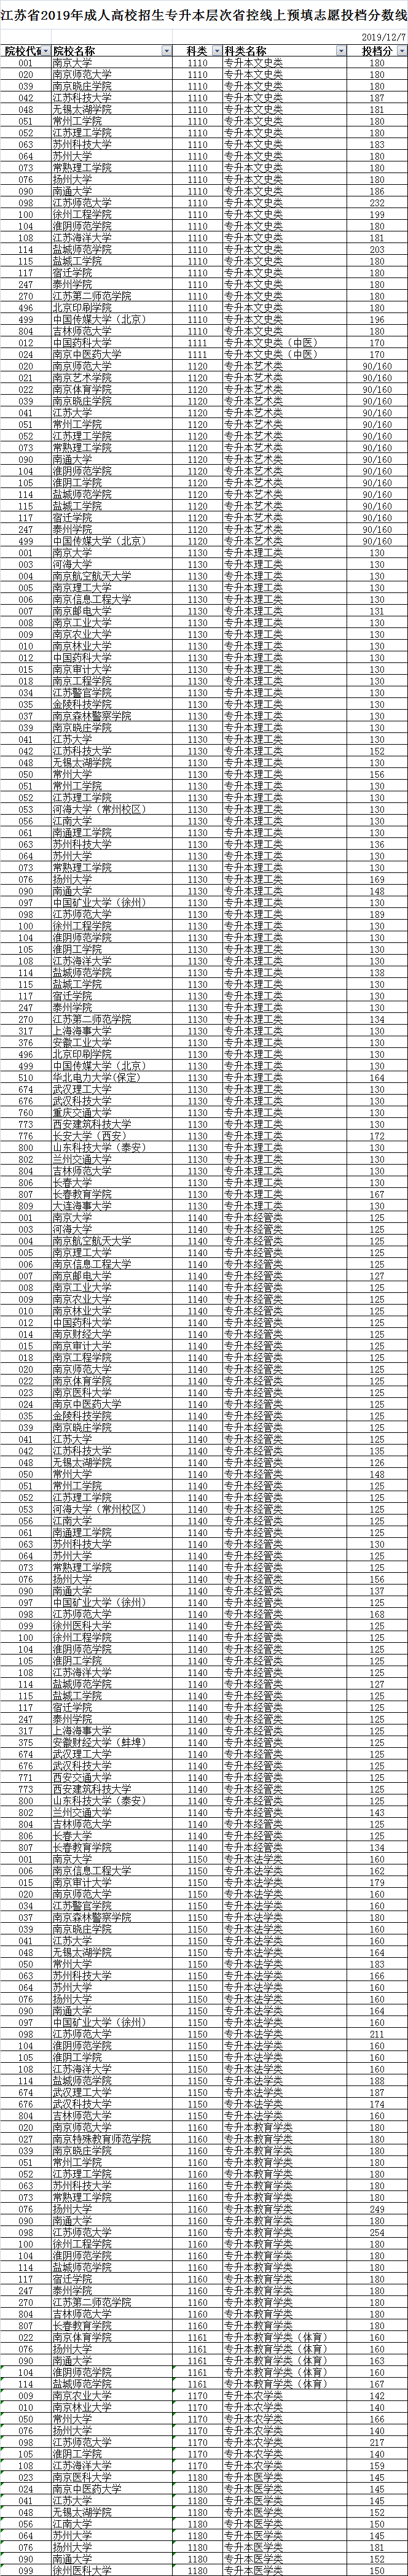 江苏省2019年成人高校招生专升本层次预填志愿投档分数线